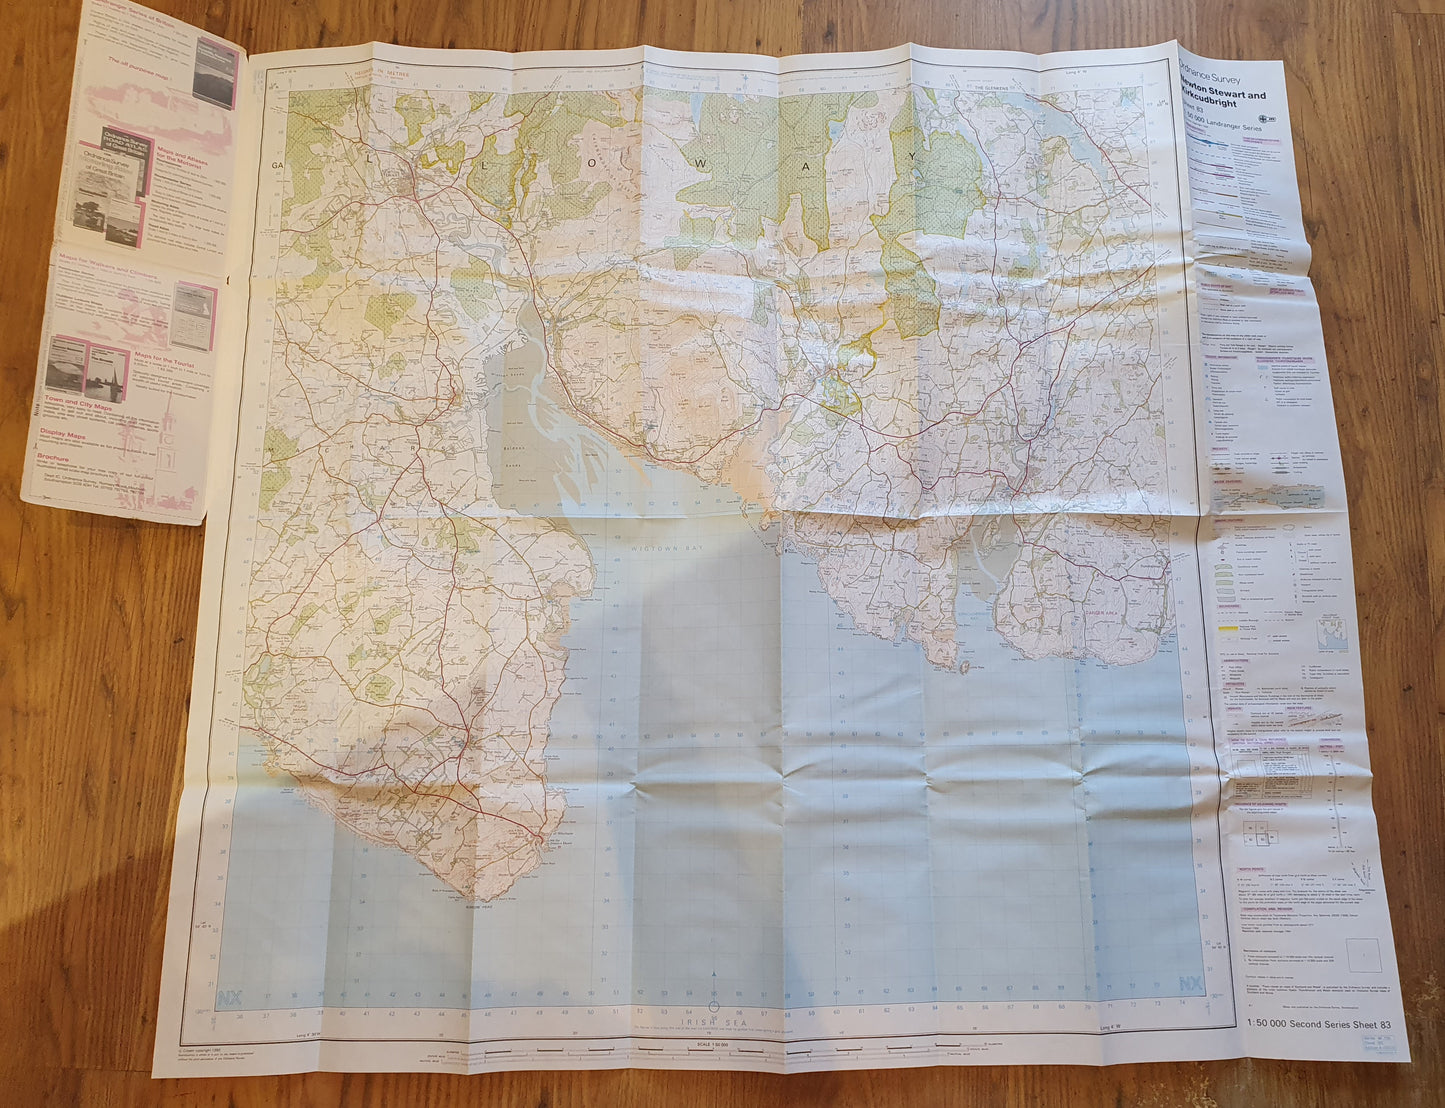 Ordnance Survey Landranger Map - Newton Stewart & Kirkcudbright Area (Sheet 83)